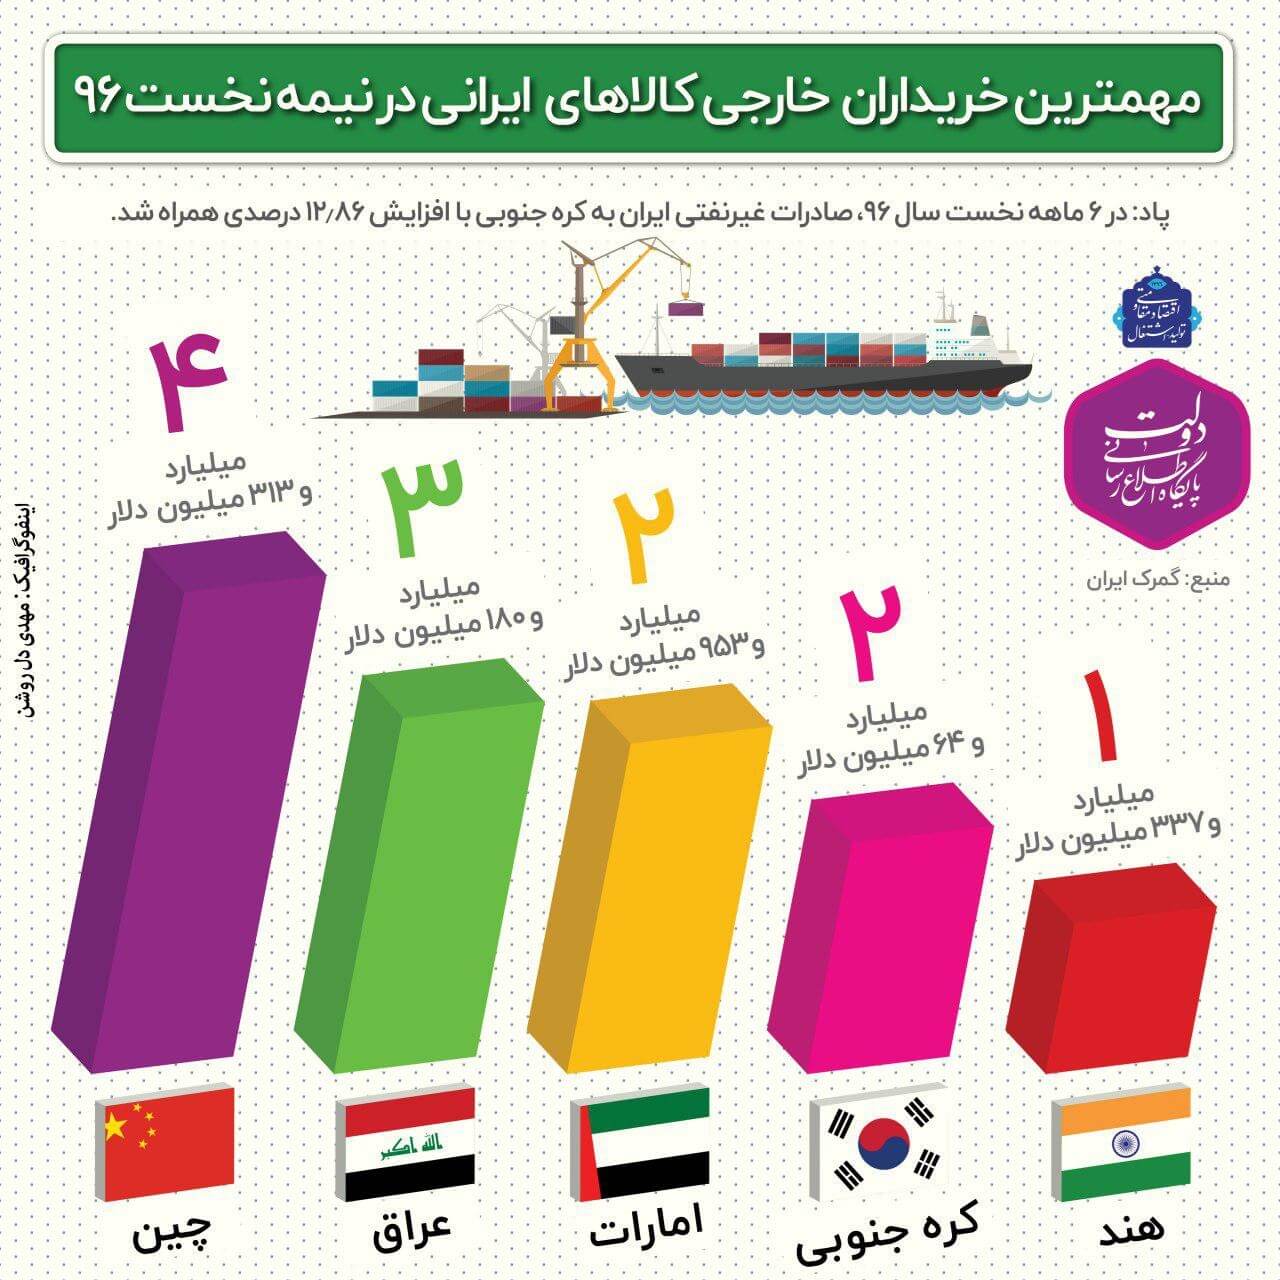 اینفوگرافیک کشورهای خریدار کالاهای ایرانی